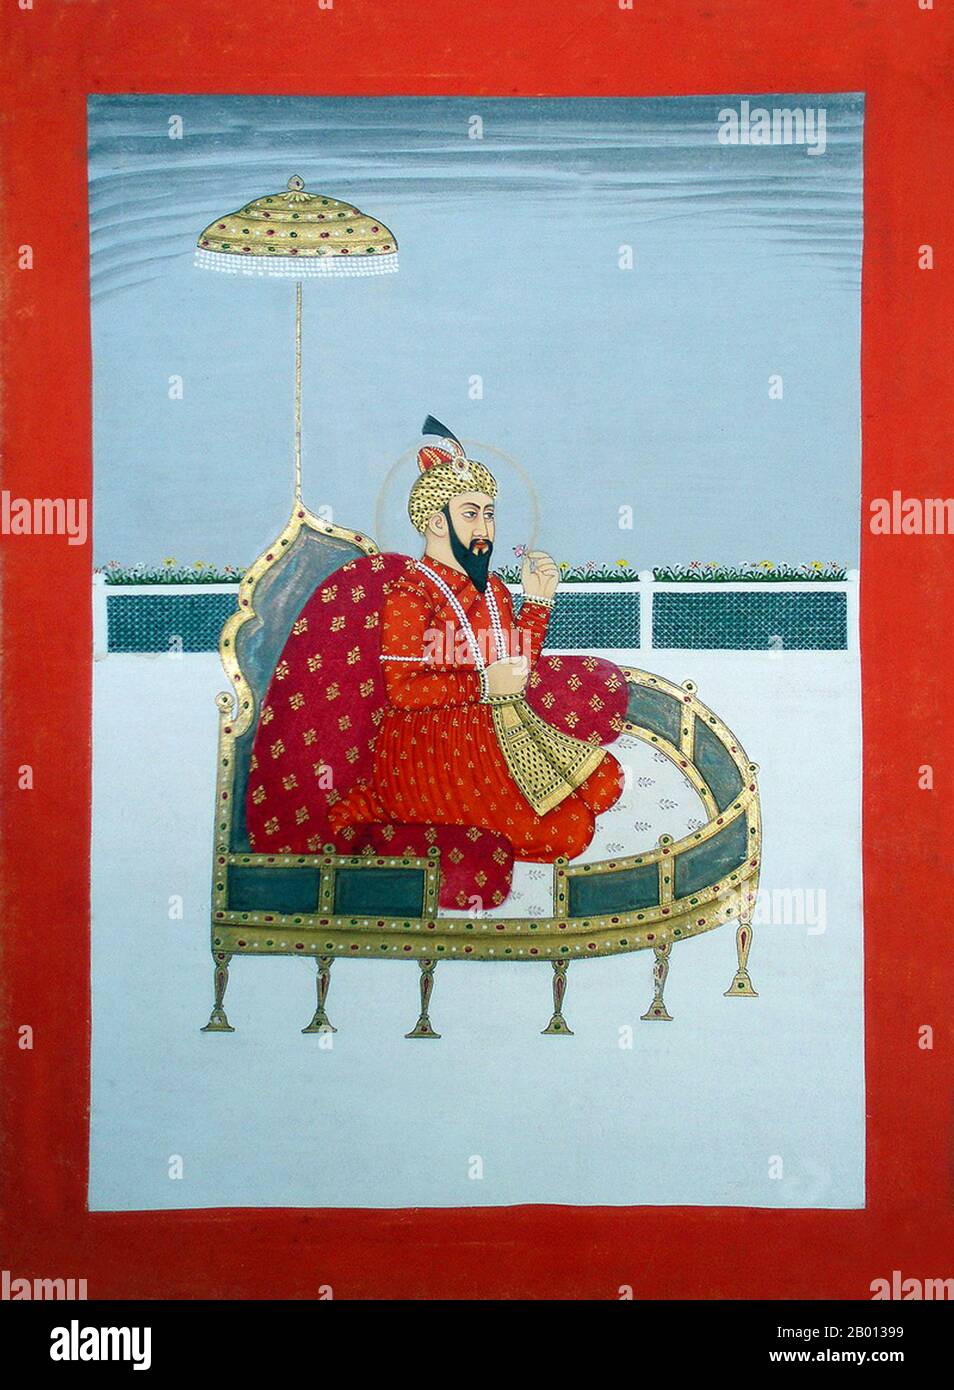 Indien: Zahir ud-din Muhammad Babur (1483-1531) der erste Mogul-Kaiser. Malerei, c. 19. Jahrhundert. Zahir ud-din Muhammad Babur war ein muslimischer Eroberer aus Zentralasien, der nach einer Reihe von Rückschlägen schließlich die Grundlage für die Moguldynastie Südasiens legte. Er war durch seinen Vater ein direkter Nachkomme von Timur und durch seine Mutter auch ein Nachkomme von Dschingis Khan. Babur identifizierte seine Abstammung als Timurid und Chaghatay-Turkisch, während seine Herkunft, sein Milieu, seine Ausbildung und seine Kultur in der persischen Kultur verwurzelt waren. Stockfoto